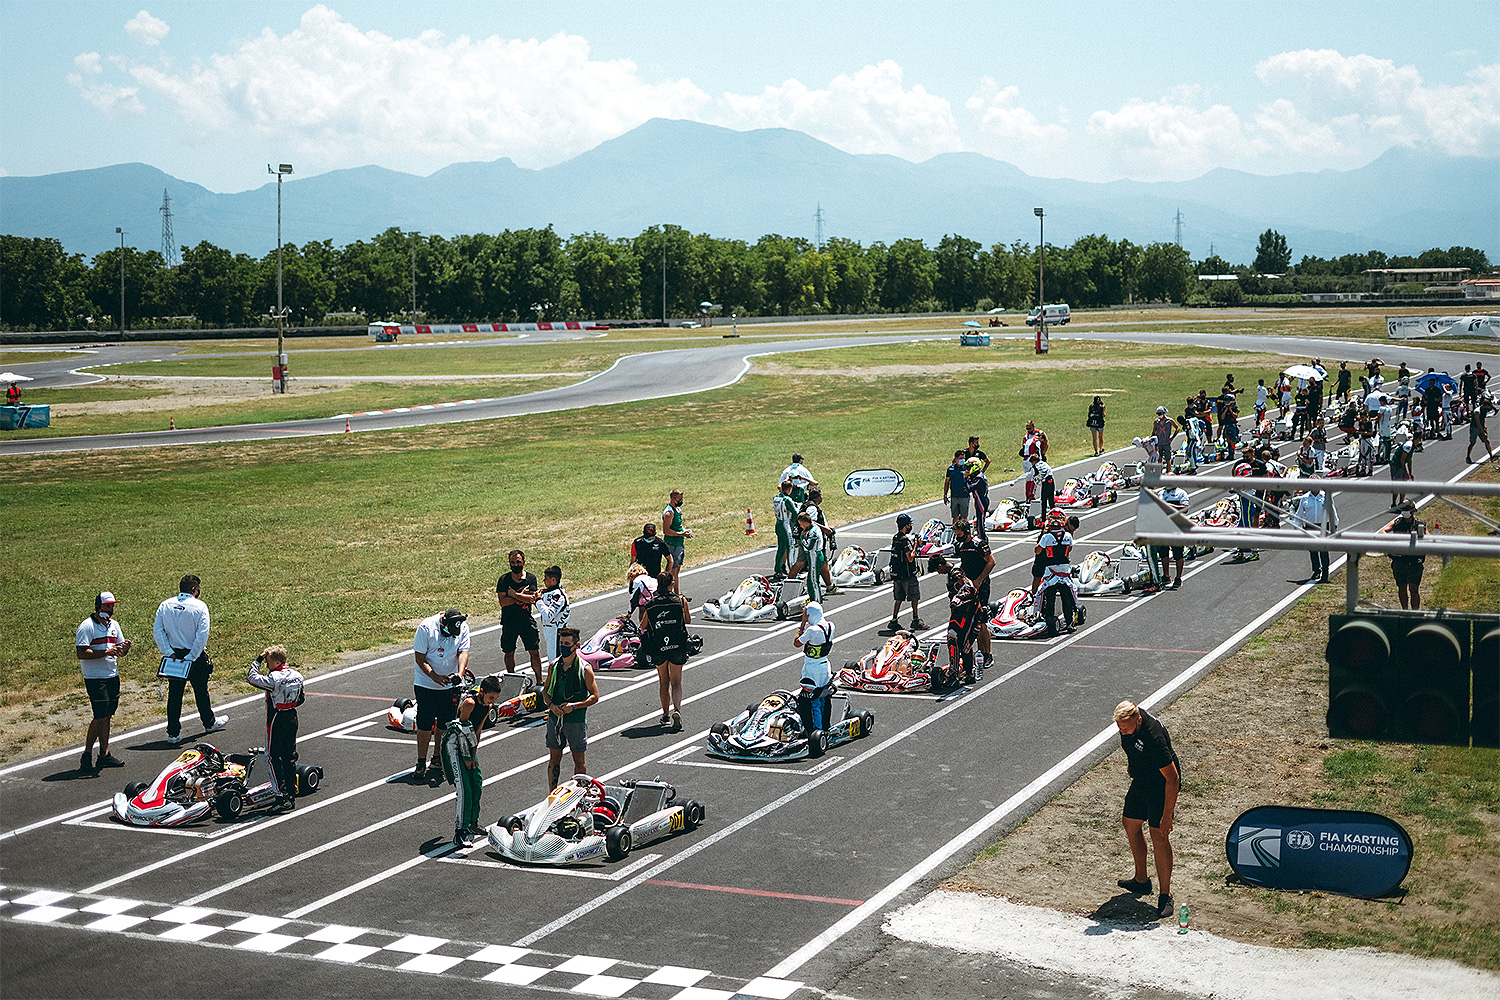 Über 200 Teilnehmer bei Kart-WM in Sarno